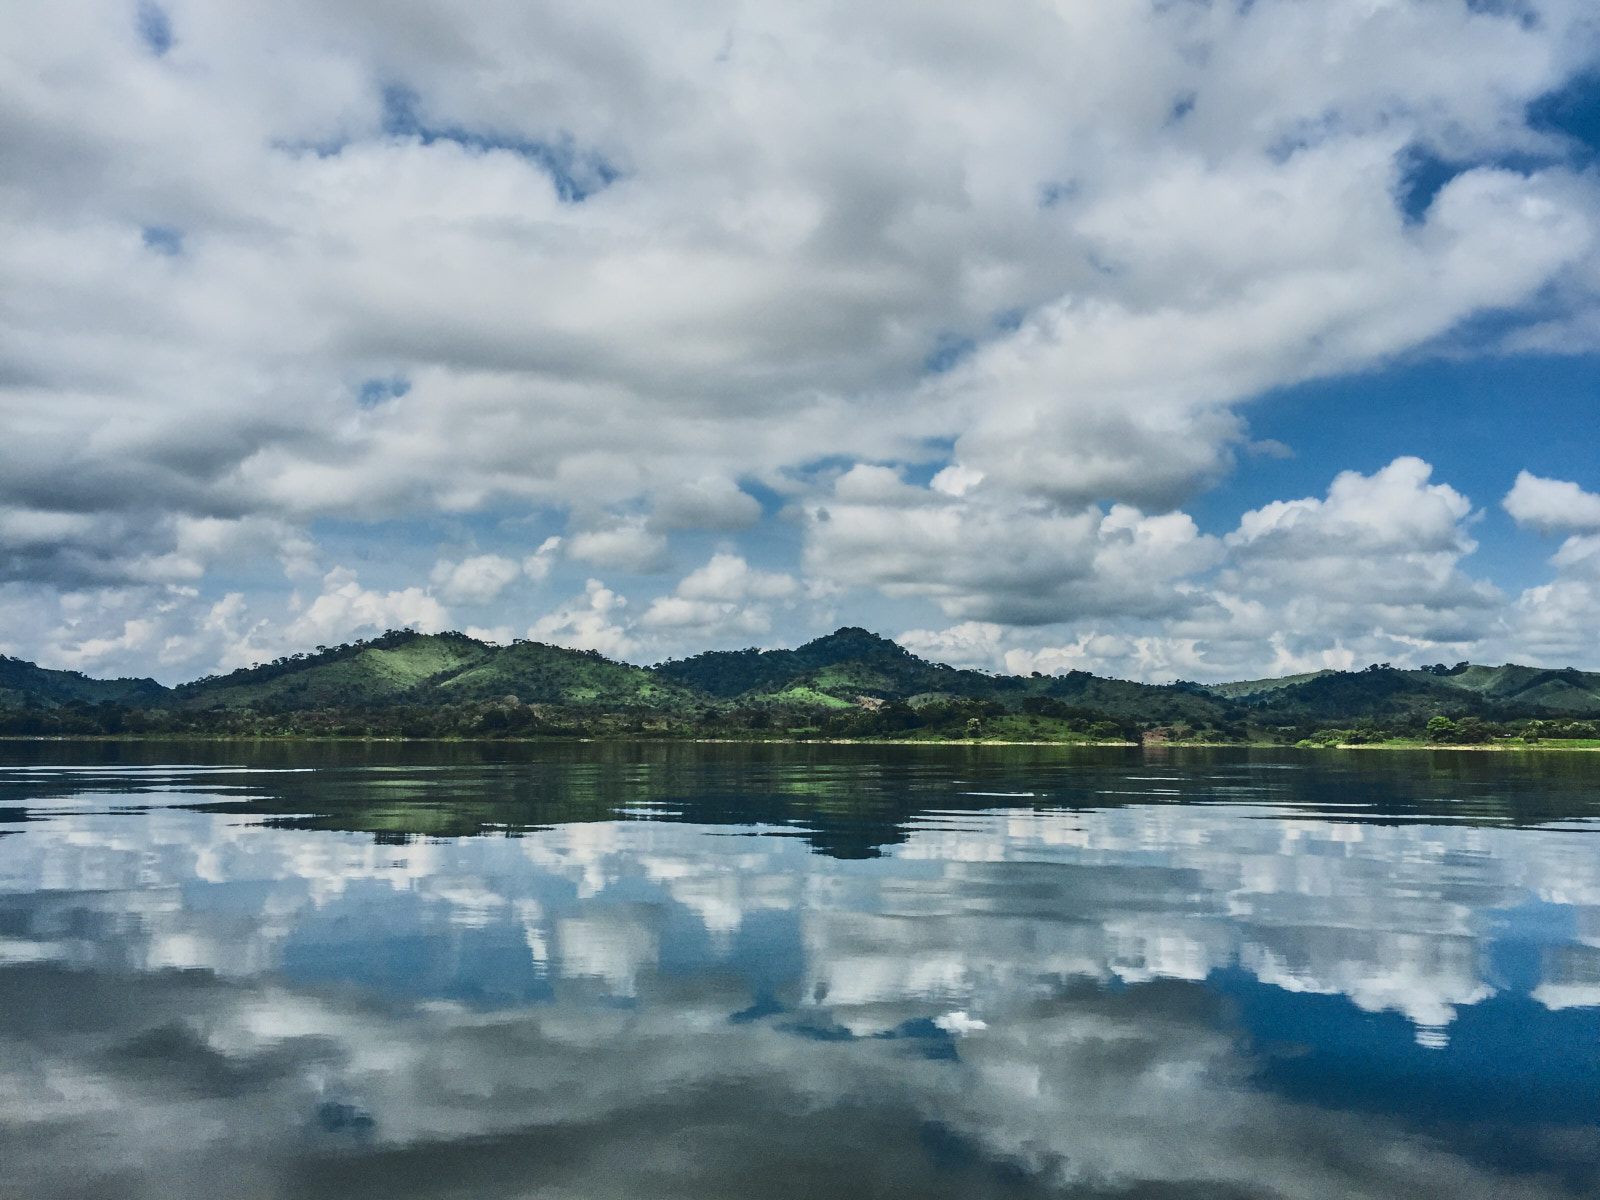 iPhone Shot: Vista del Paisaje en el Lago Bayano desde un Bote